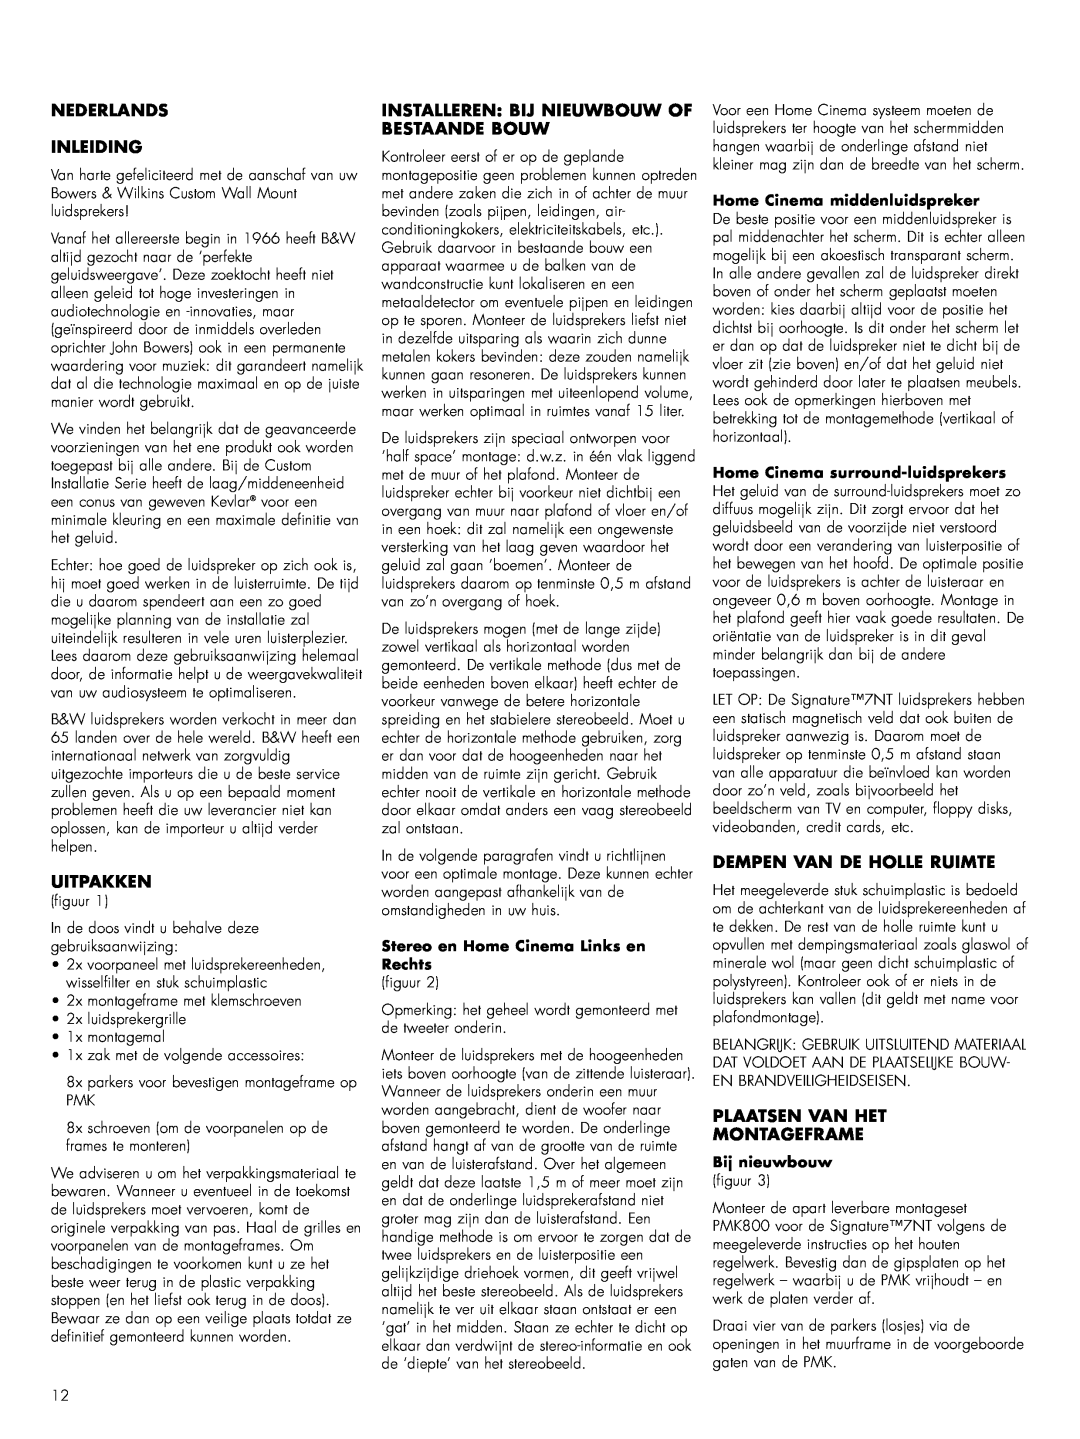 Bowers & Wilkins Sig7-NT owner manual Nederlands Inleiding, Uitpakken, Installeren: Bij Nieuwbouw Of Bestaande Bouw 